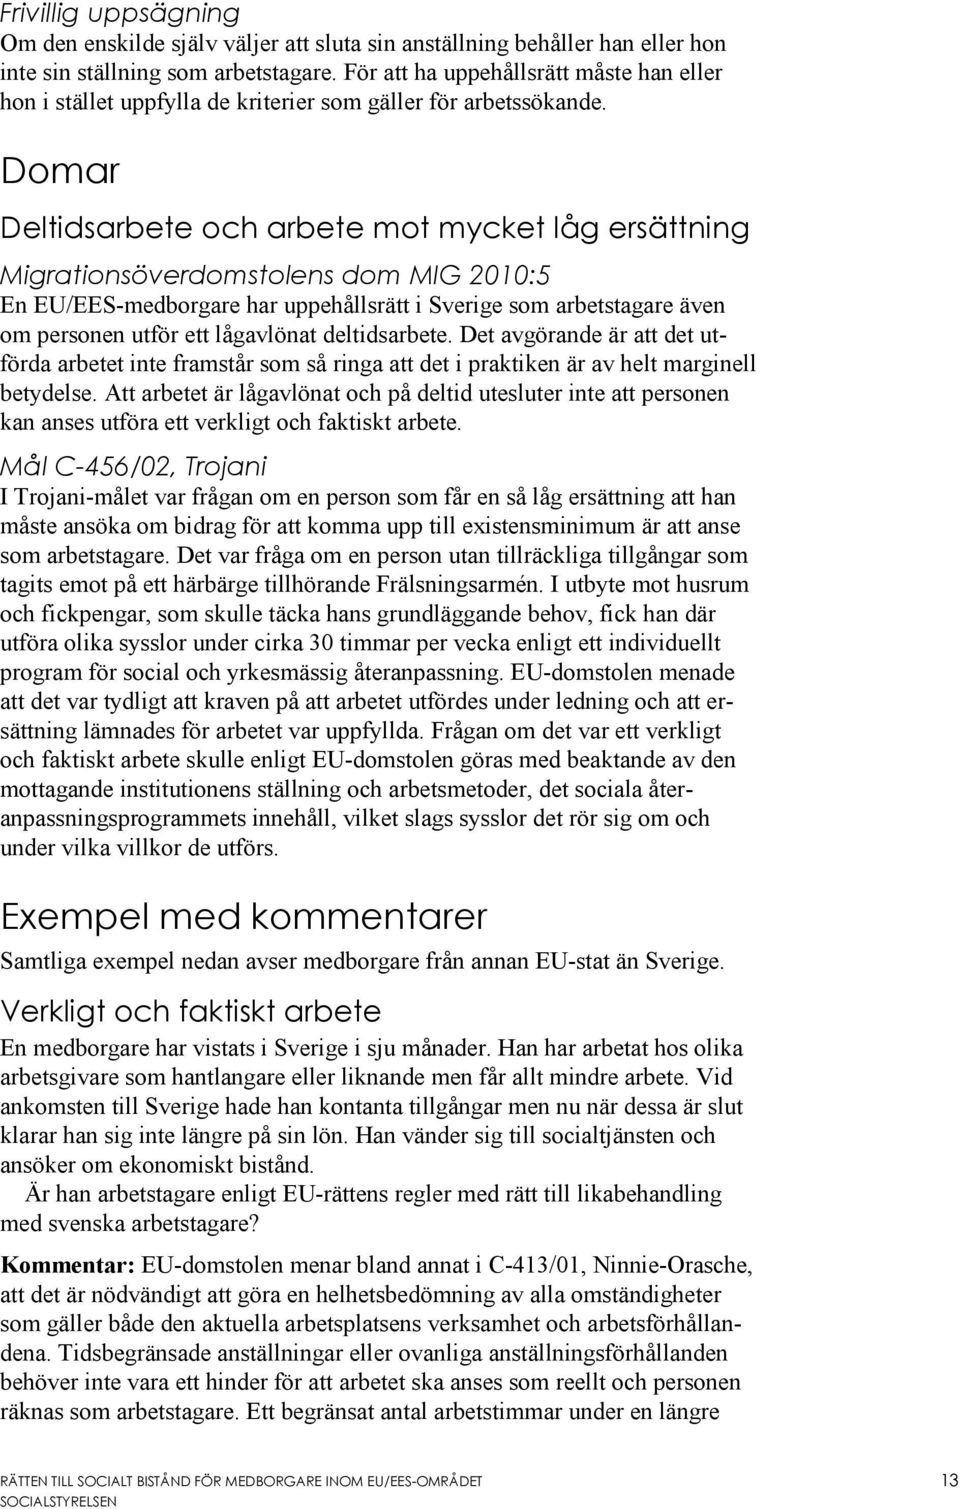 Domar Deltidsarbete och arbete mot mycket låg ersättning Migrationsöverdomstolens dom MIG 2010:5 En EU/EES-medborgare har uppehållsrätt i Sverige som arbetstagare även om personen utför ett